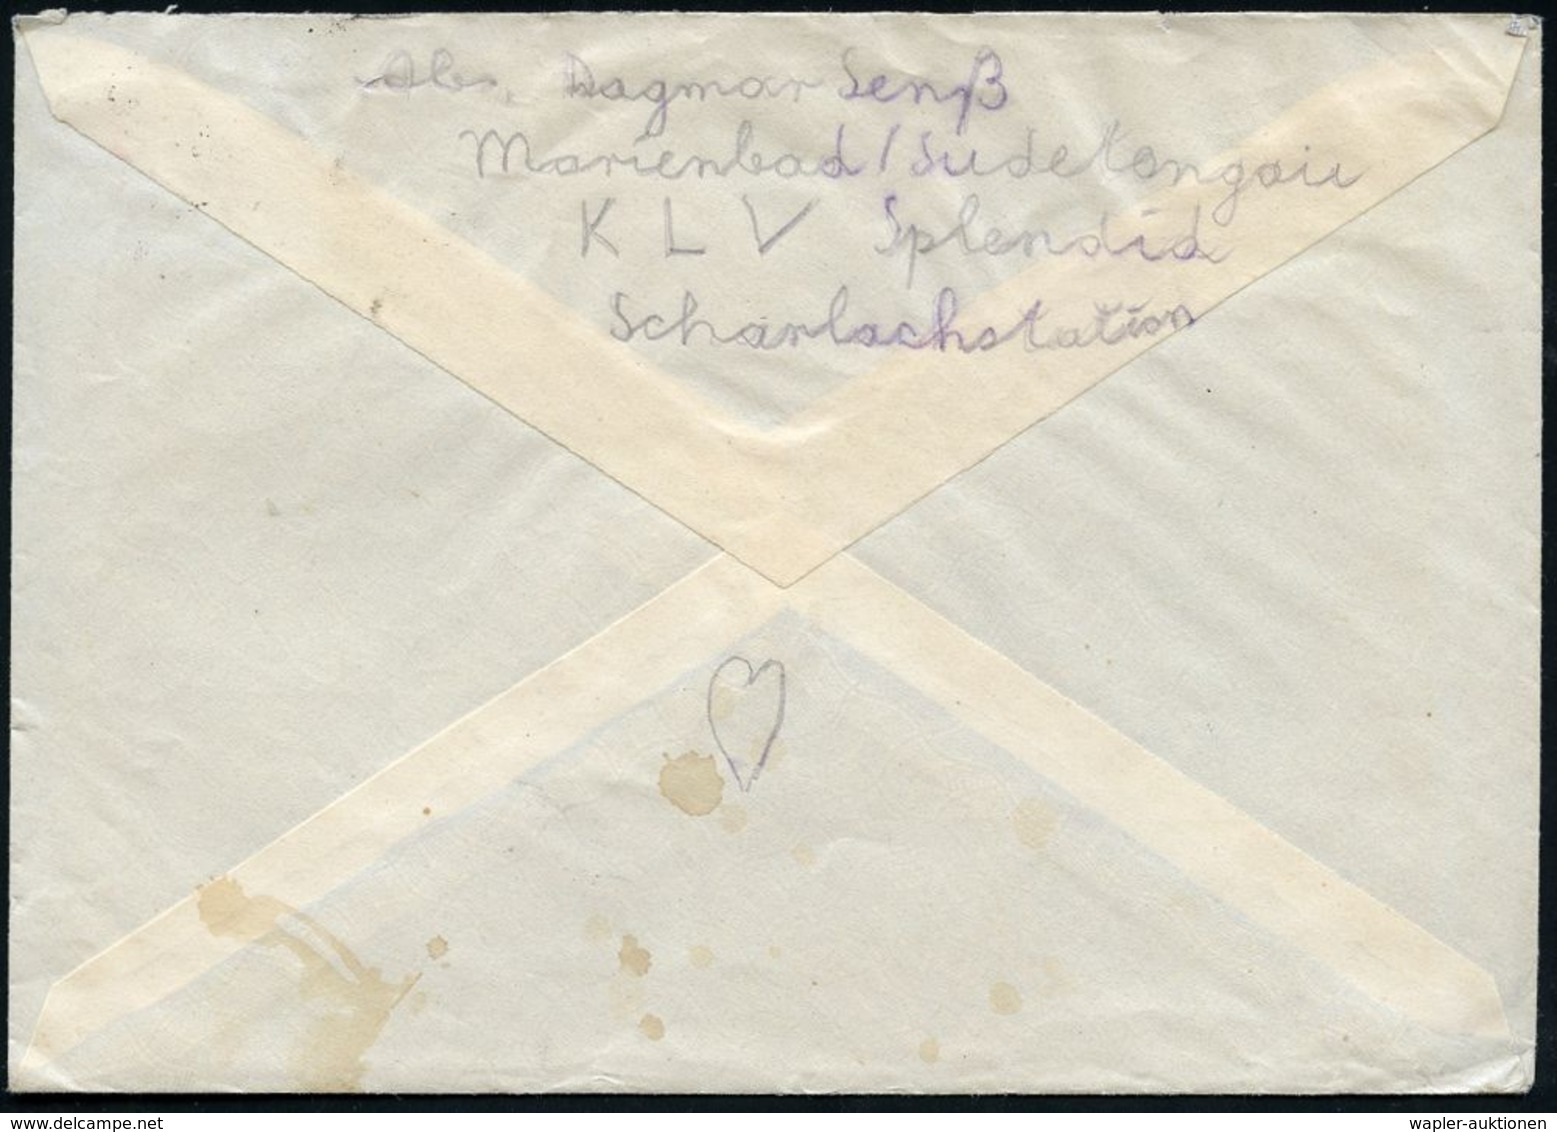 KINDERLANDVERSCHICKUNG (KLV) / KLV-LAGER : MARIENBAD 1/ F 1941 (22.11.) 2K-Steg + Viol. 3L: K L V - Lager/Hotel Splendid - 2. Weltkrieg